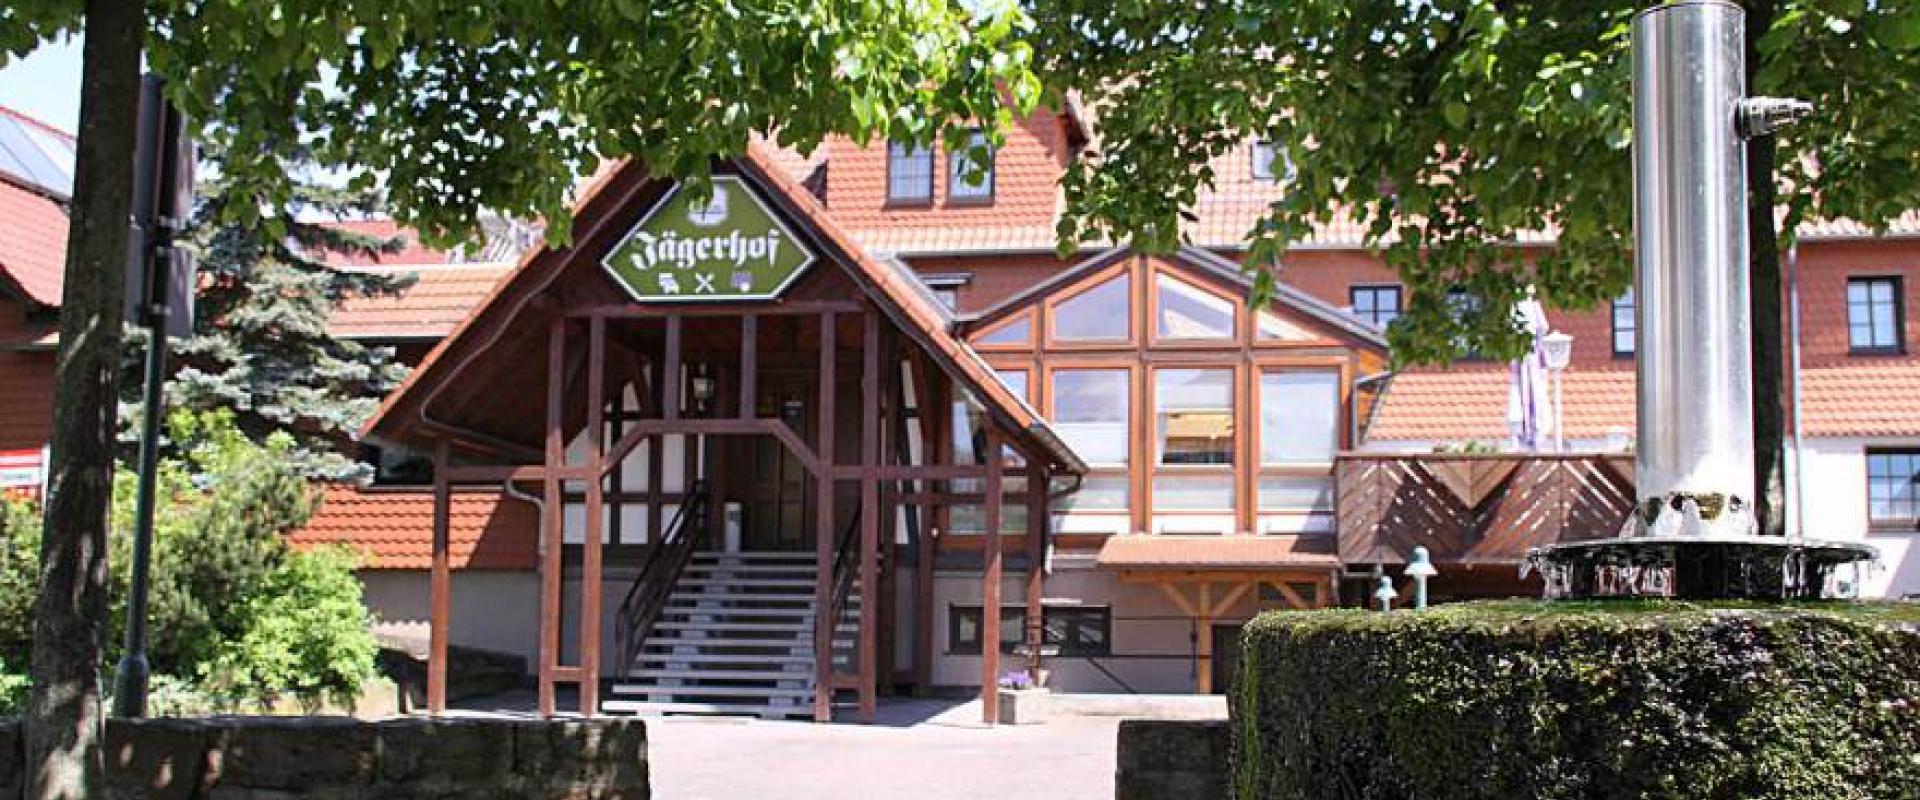 15444 Biker Hotel Jägerhof Hessisches Bergland.jpg